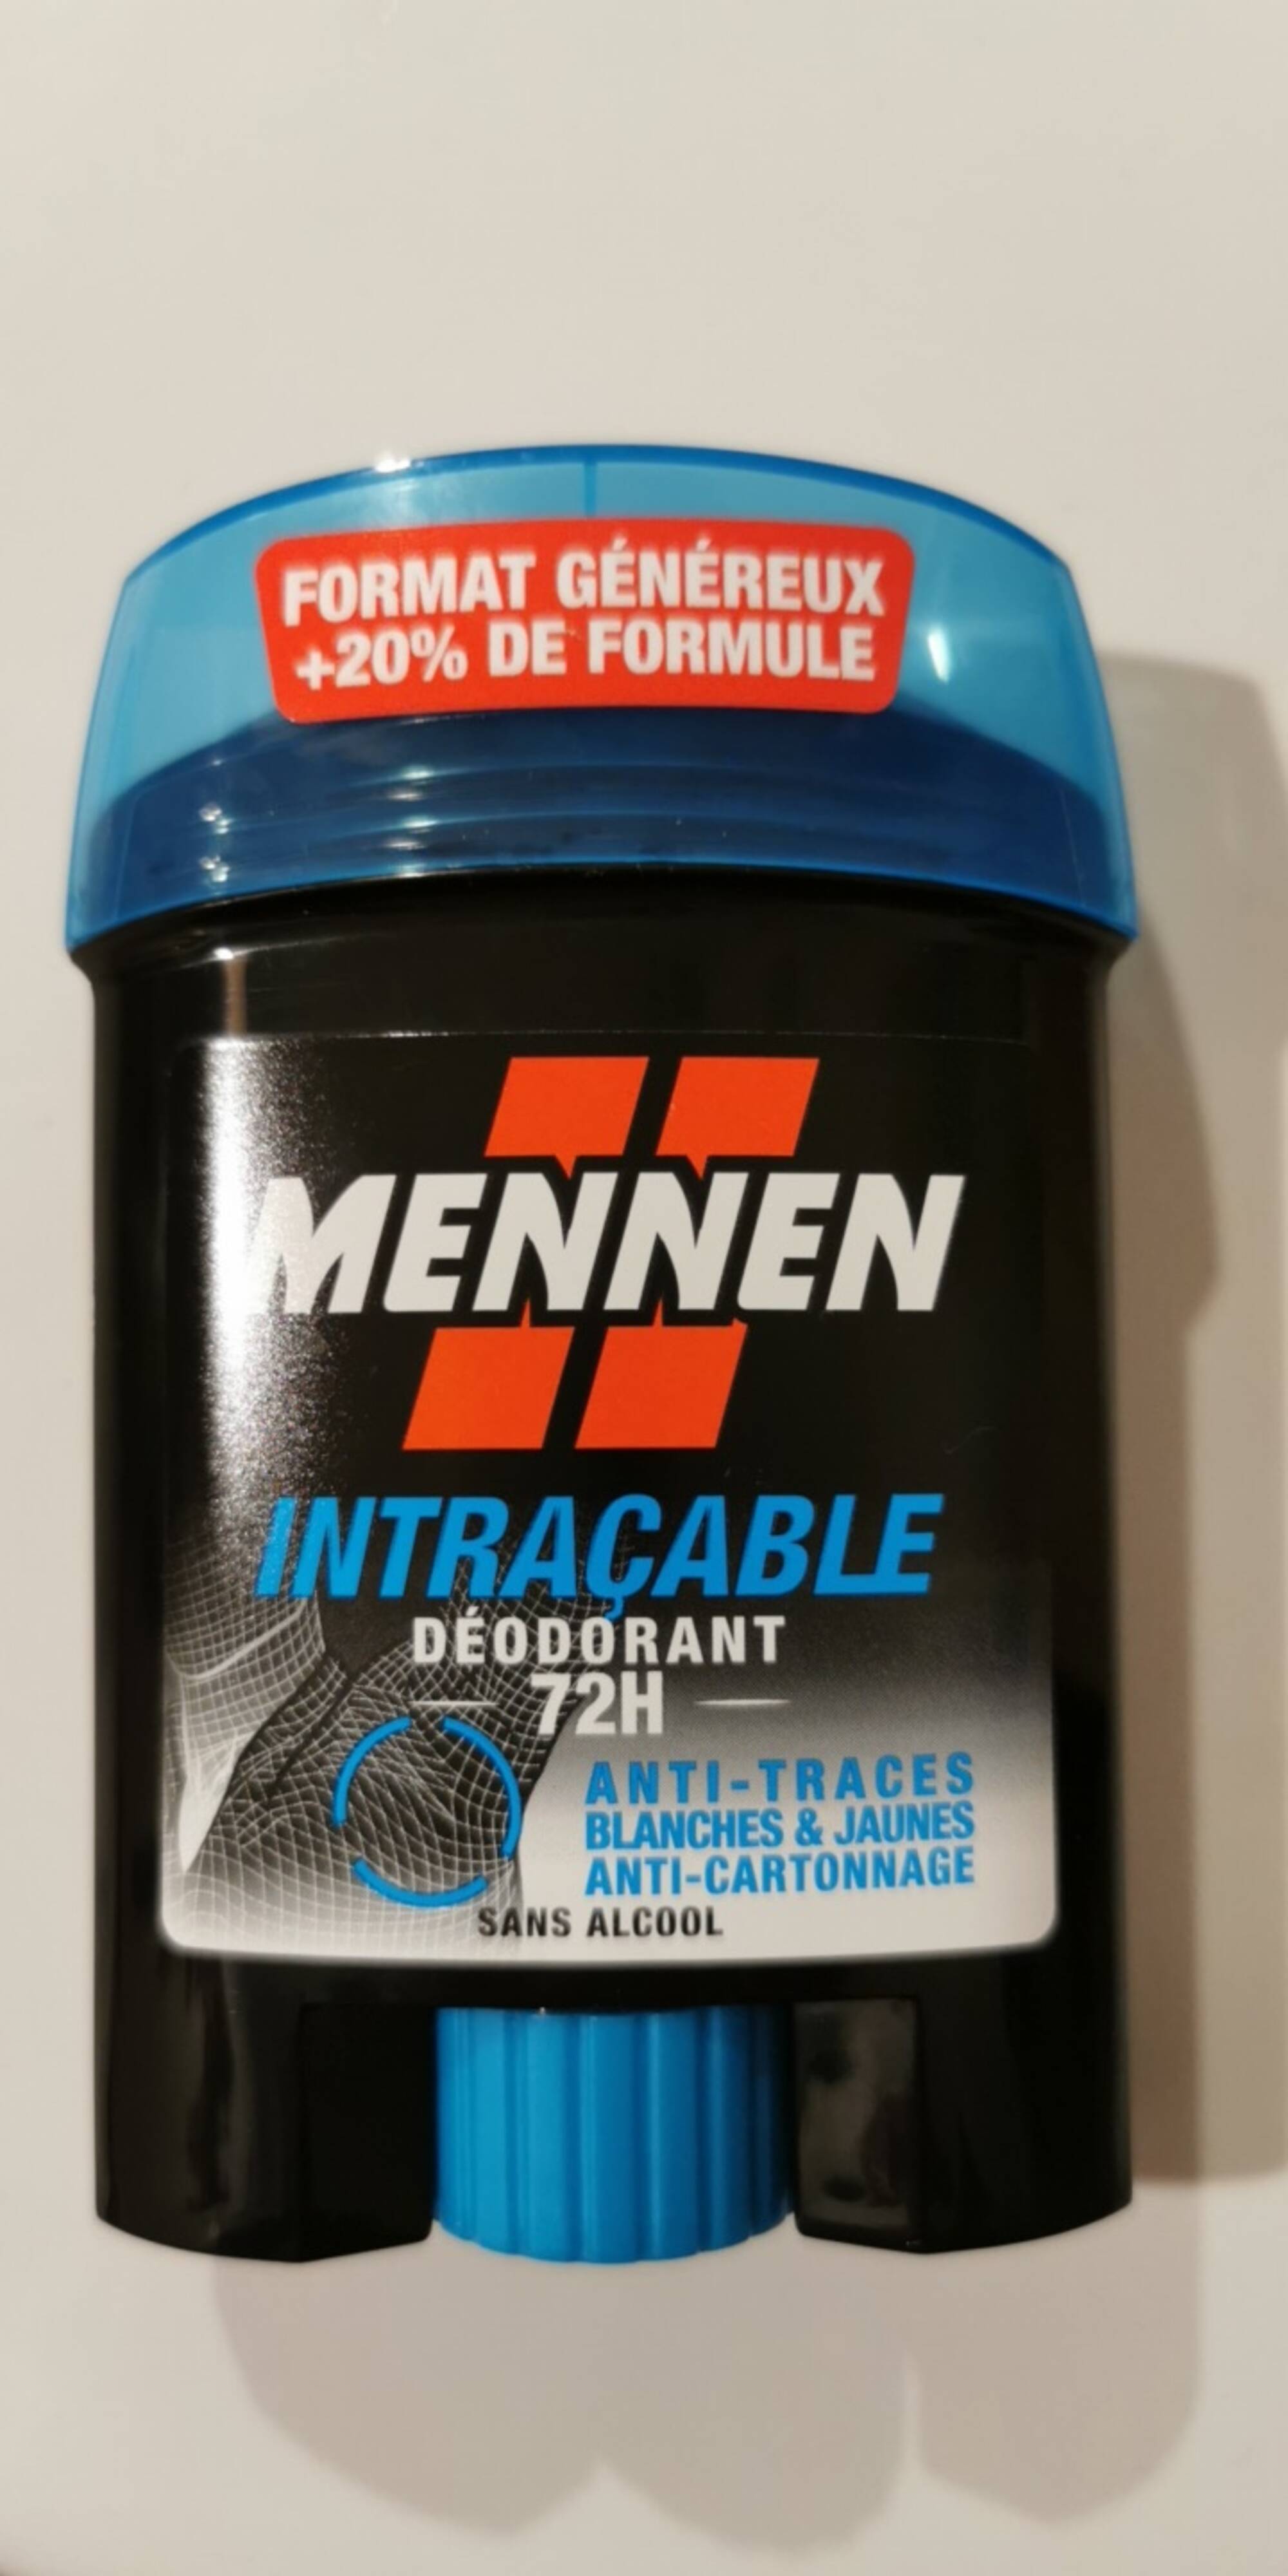 MENNEN - Intraçable - Déodorant 72h